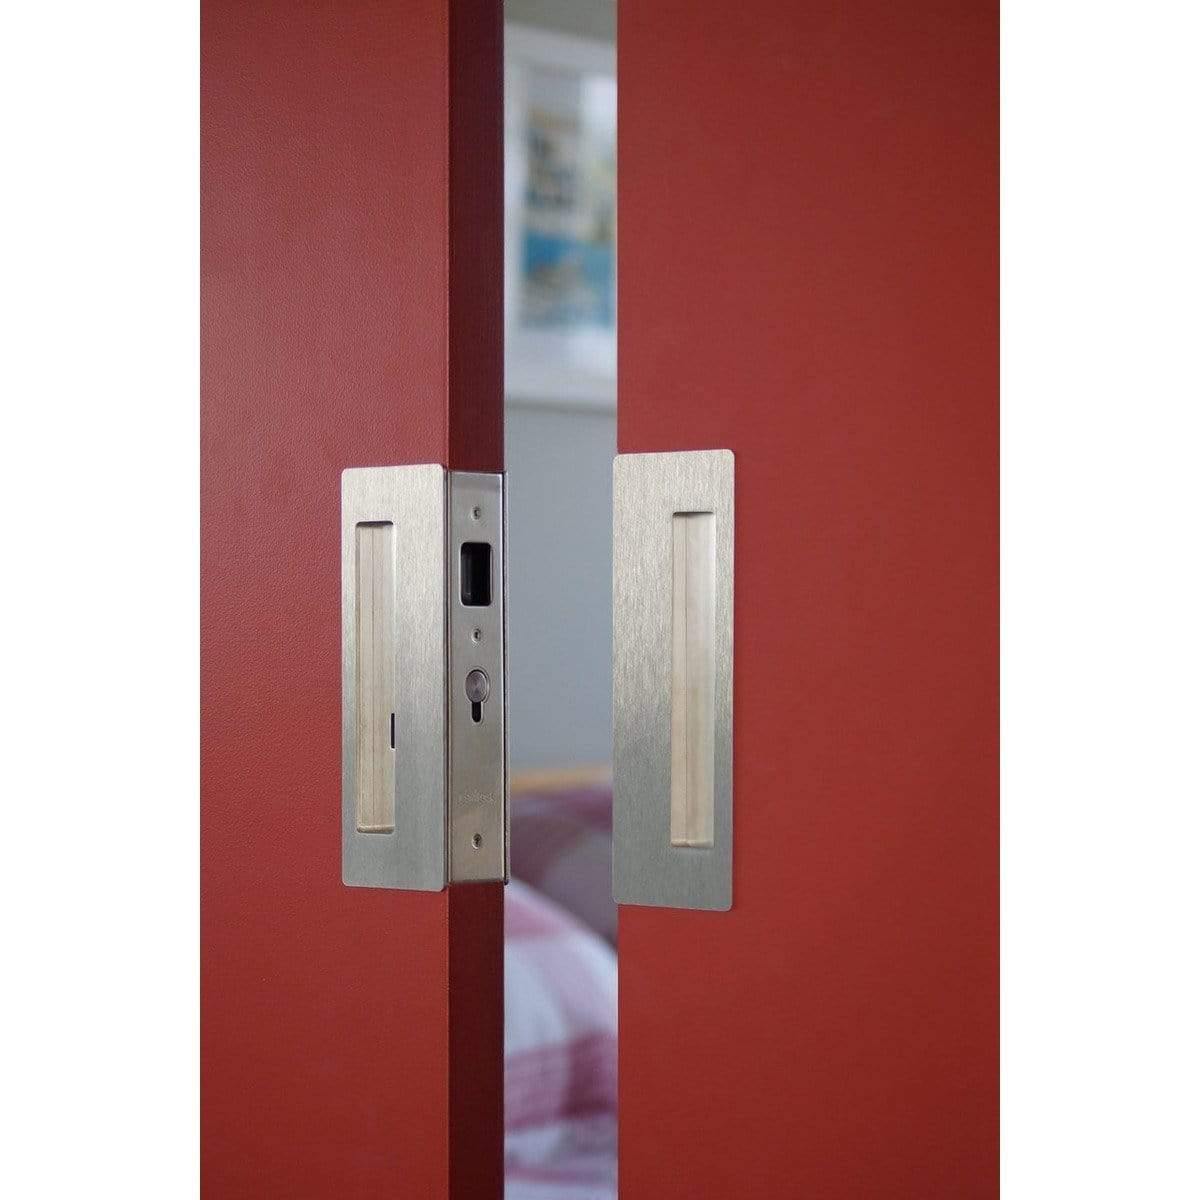 Magnetic Bi-Parting Double Barn Door Handle Set - Sliding Barn Door Hardware by RealCraft